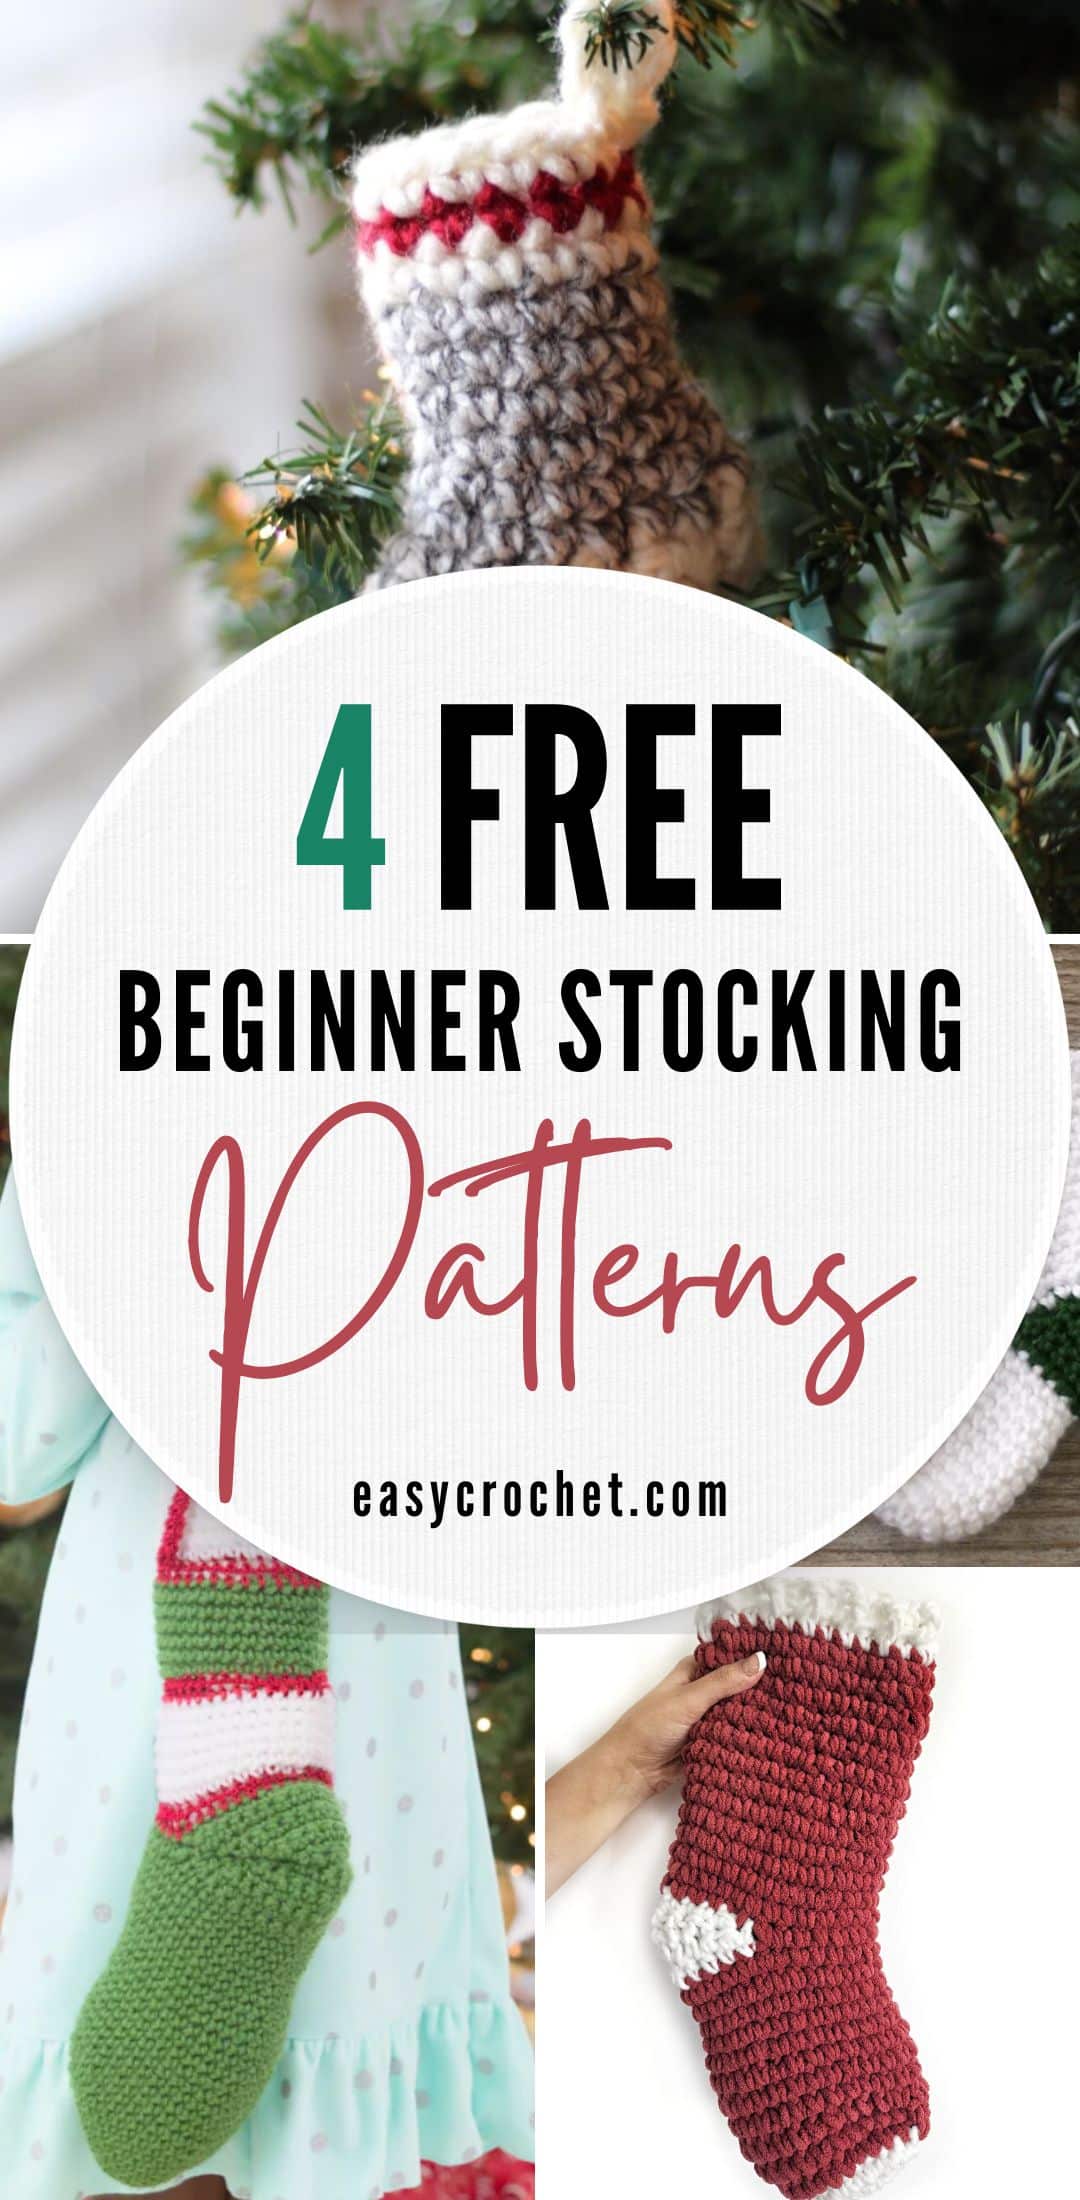 Beginner Stocking Patterns for Christmas 